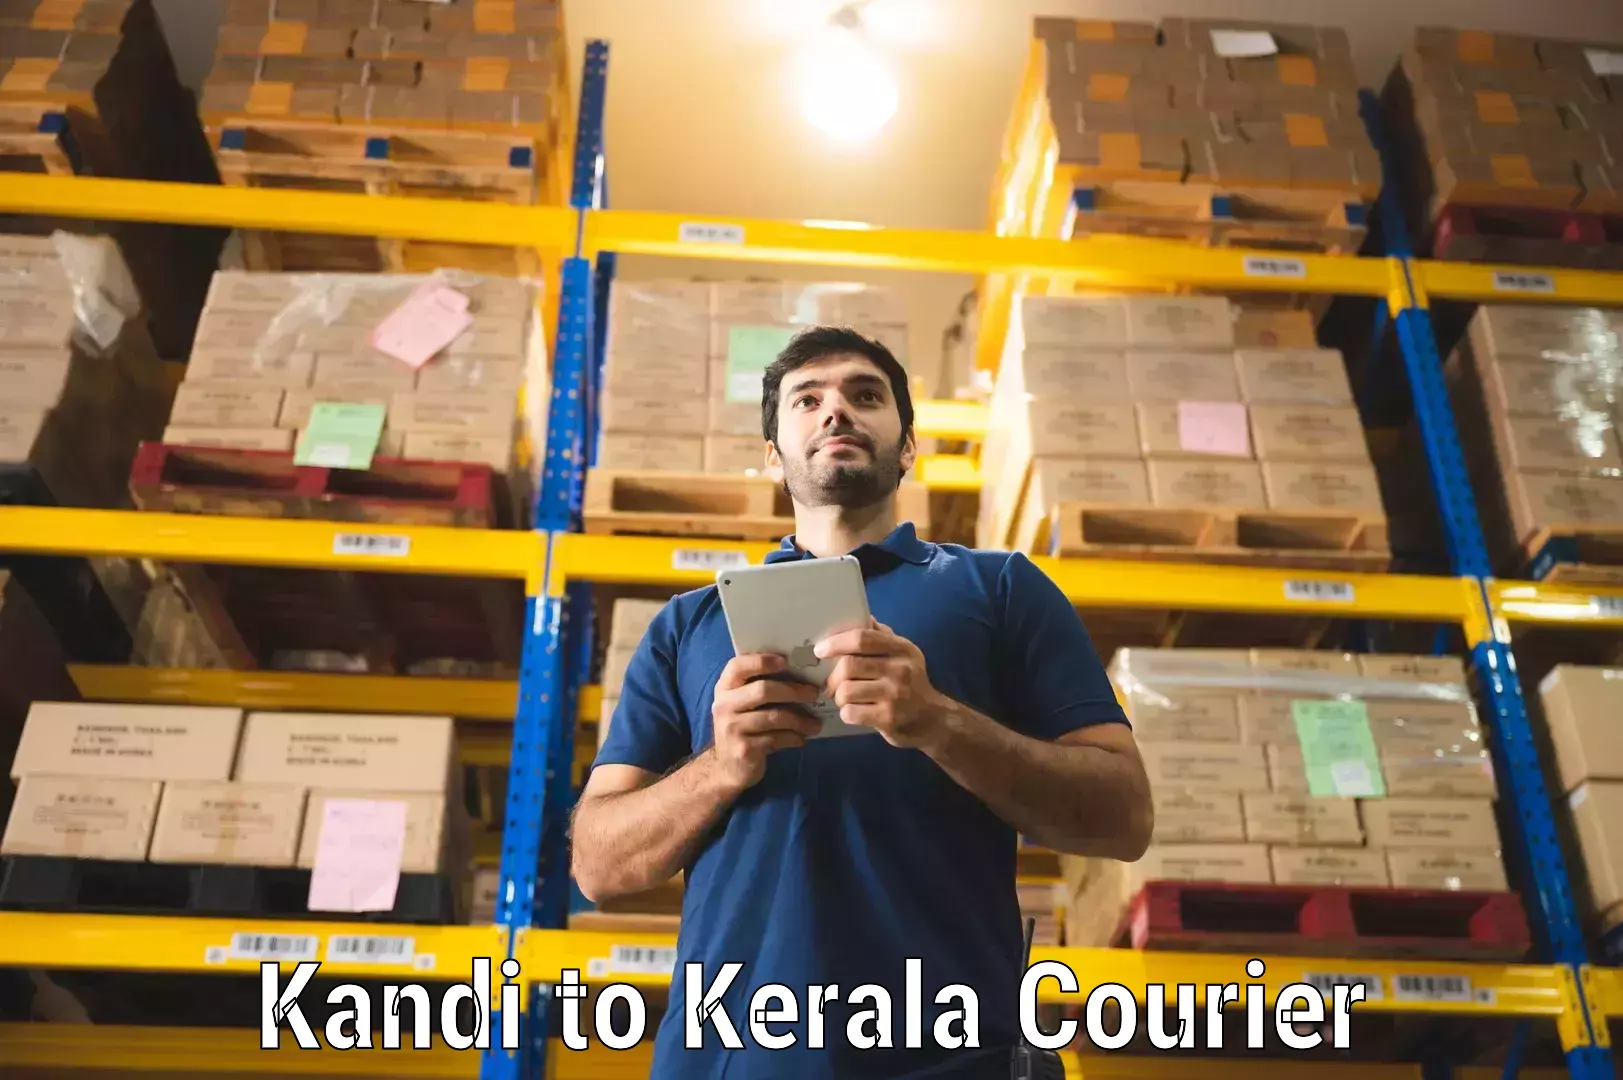 Quick dispatch service Kandi to Kerala